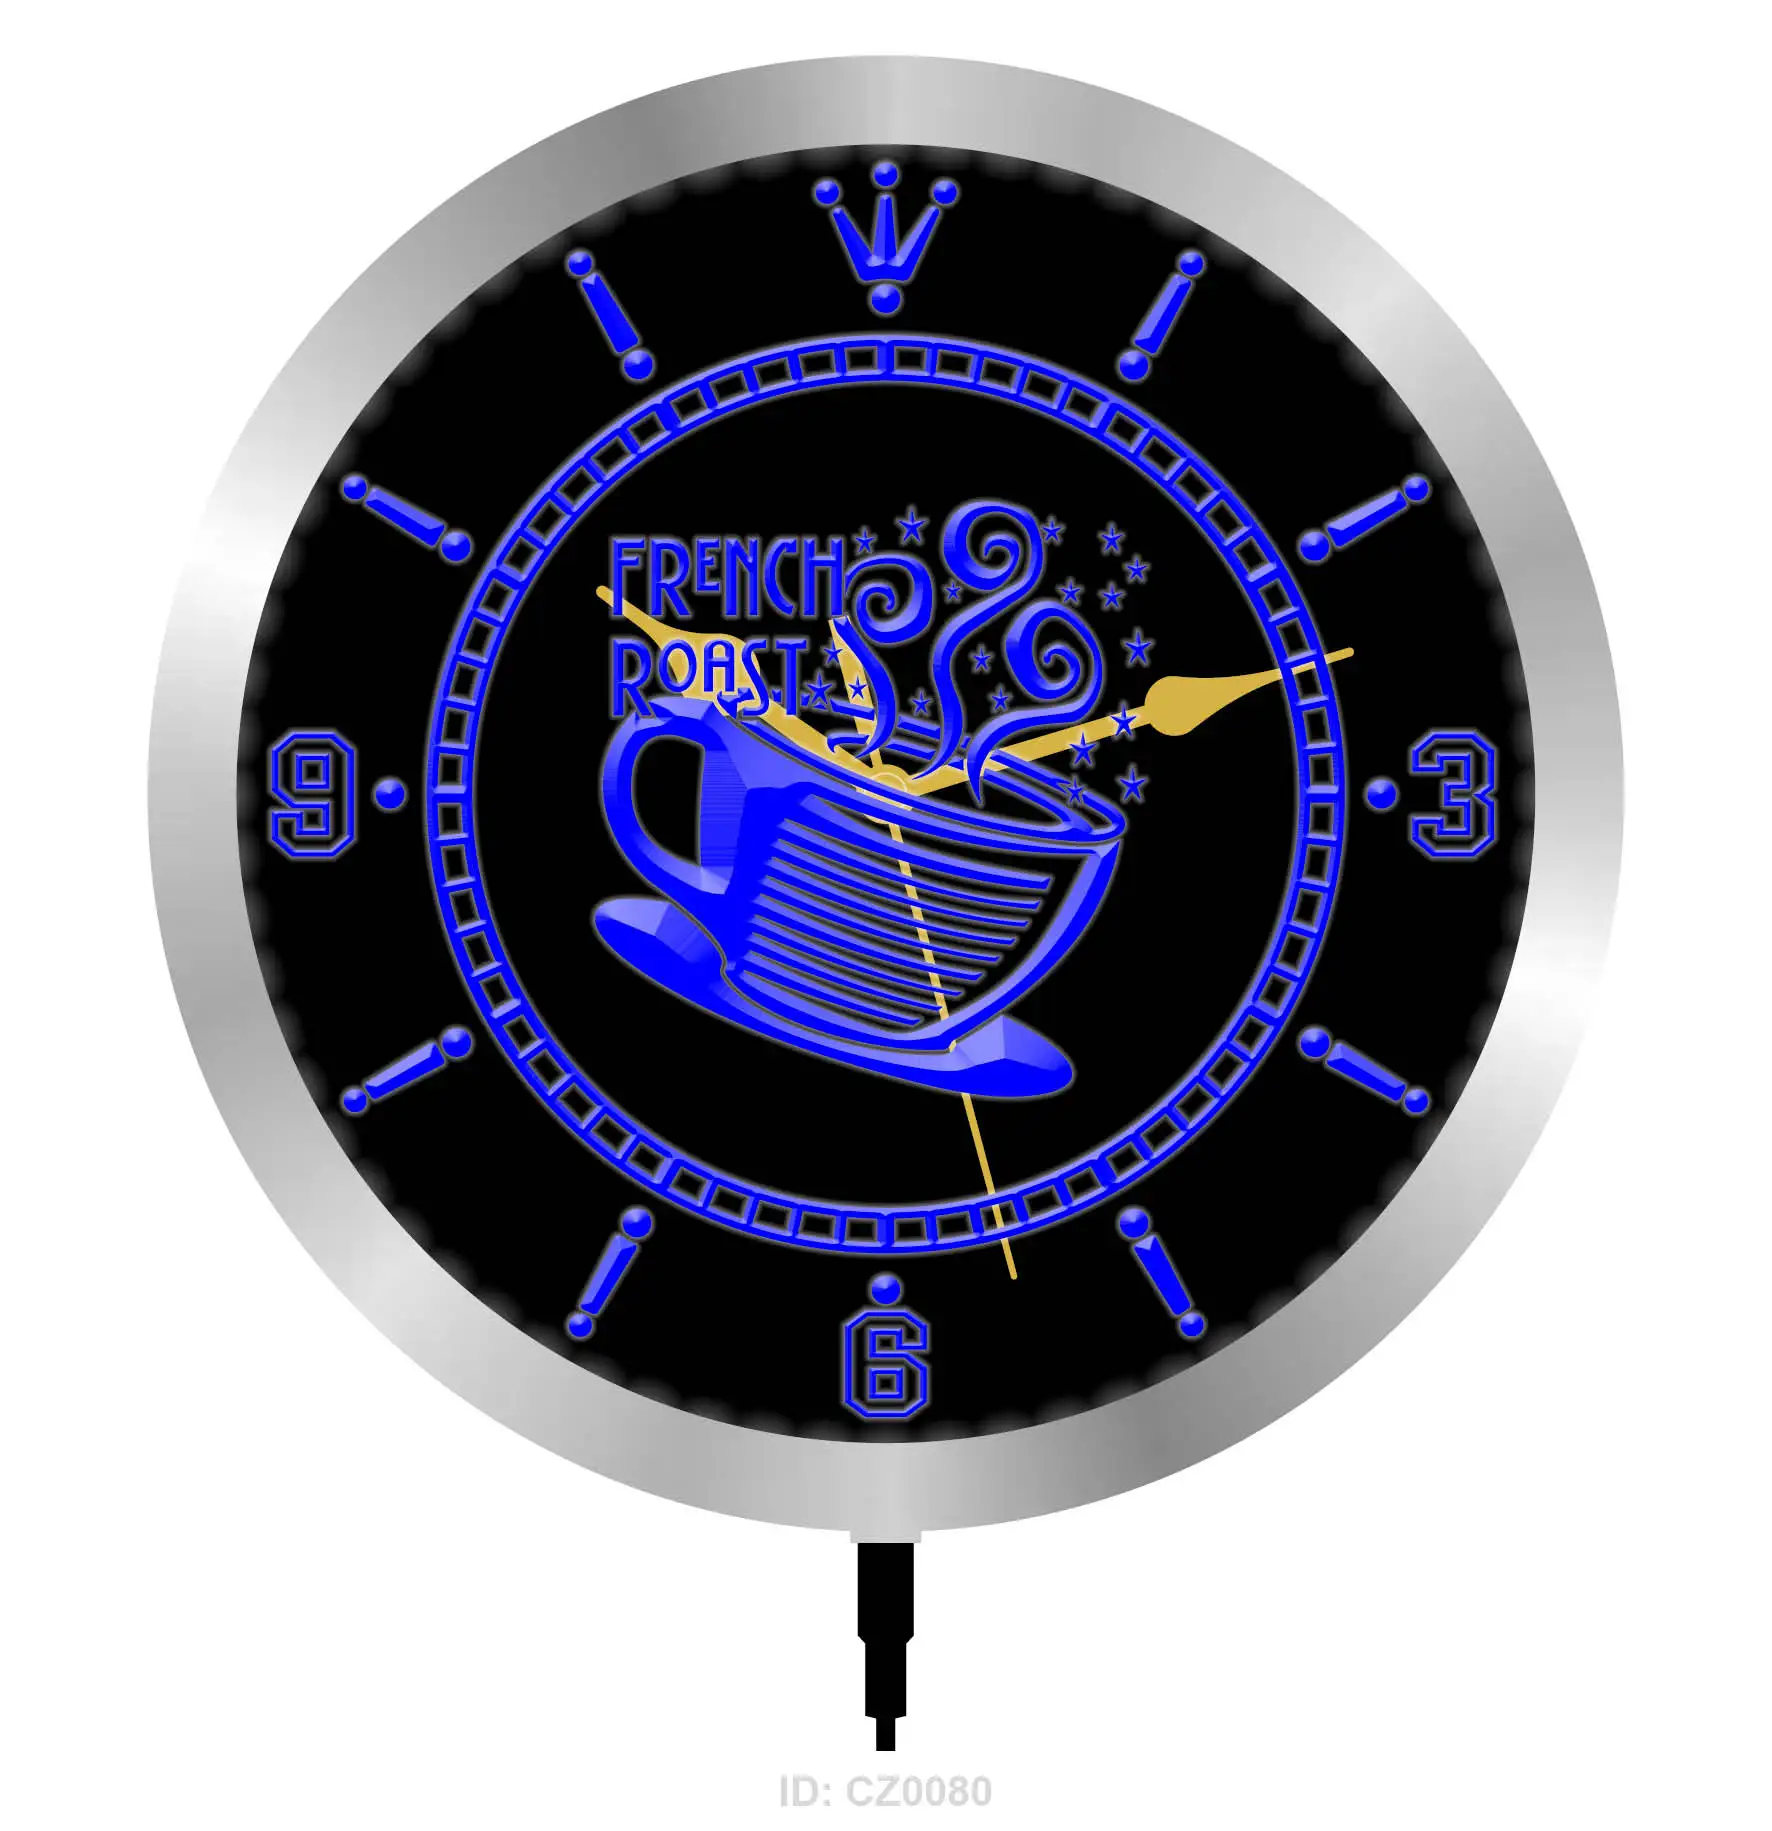 CZ0080 French Roast Bar Цветная вывеска RGB Круглые часы 3D гравировка LED Оптом и в розницу Изображение 1